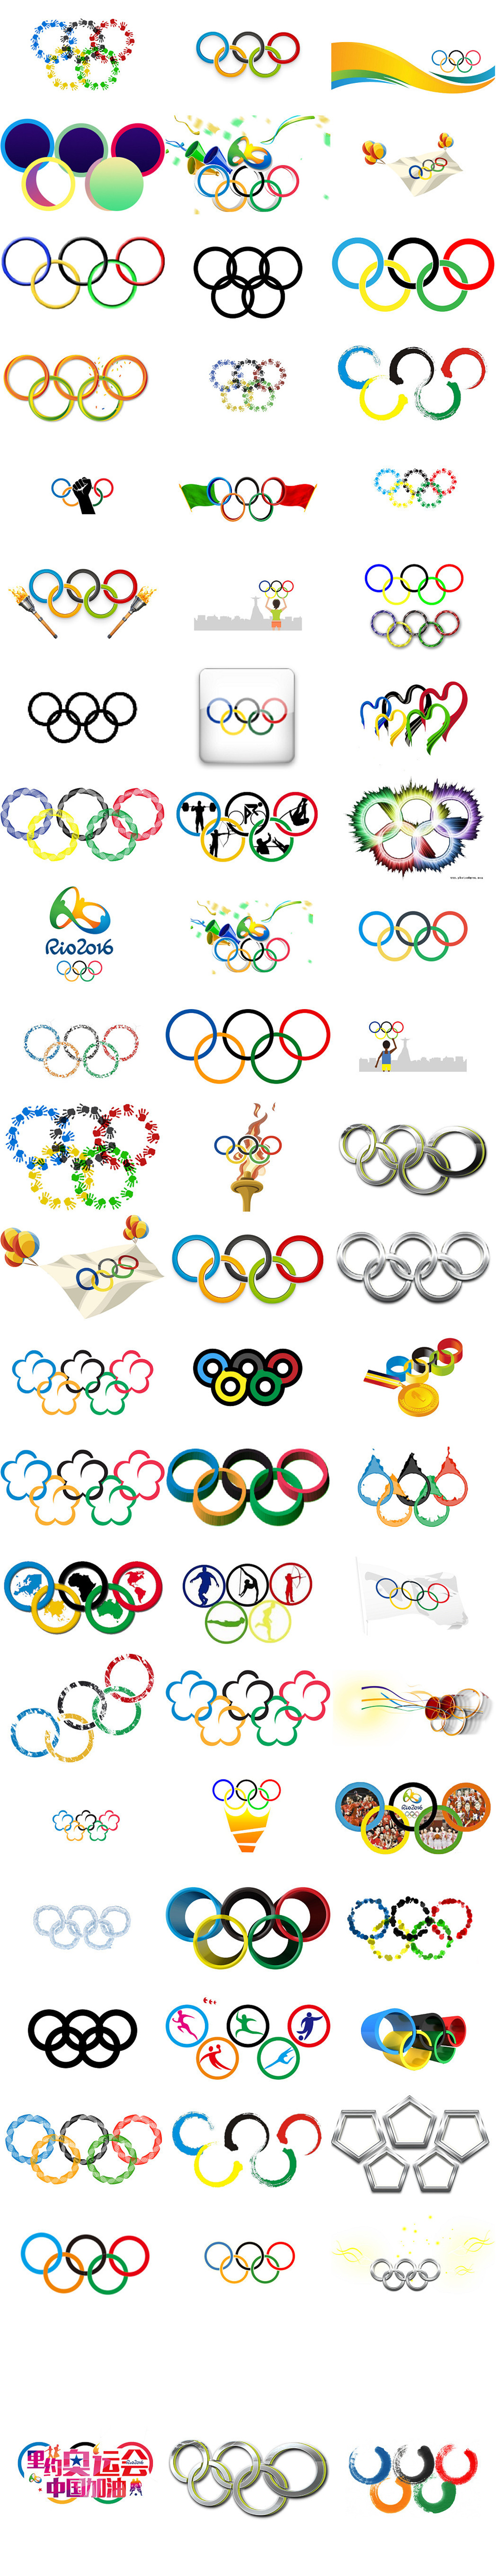 奥运五环的颜色 代表图片